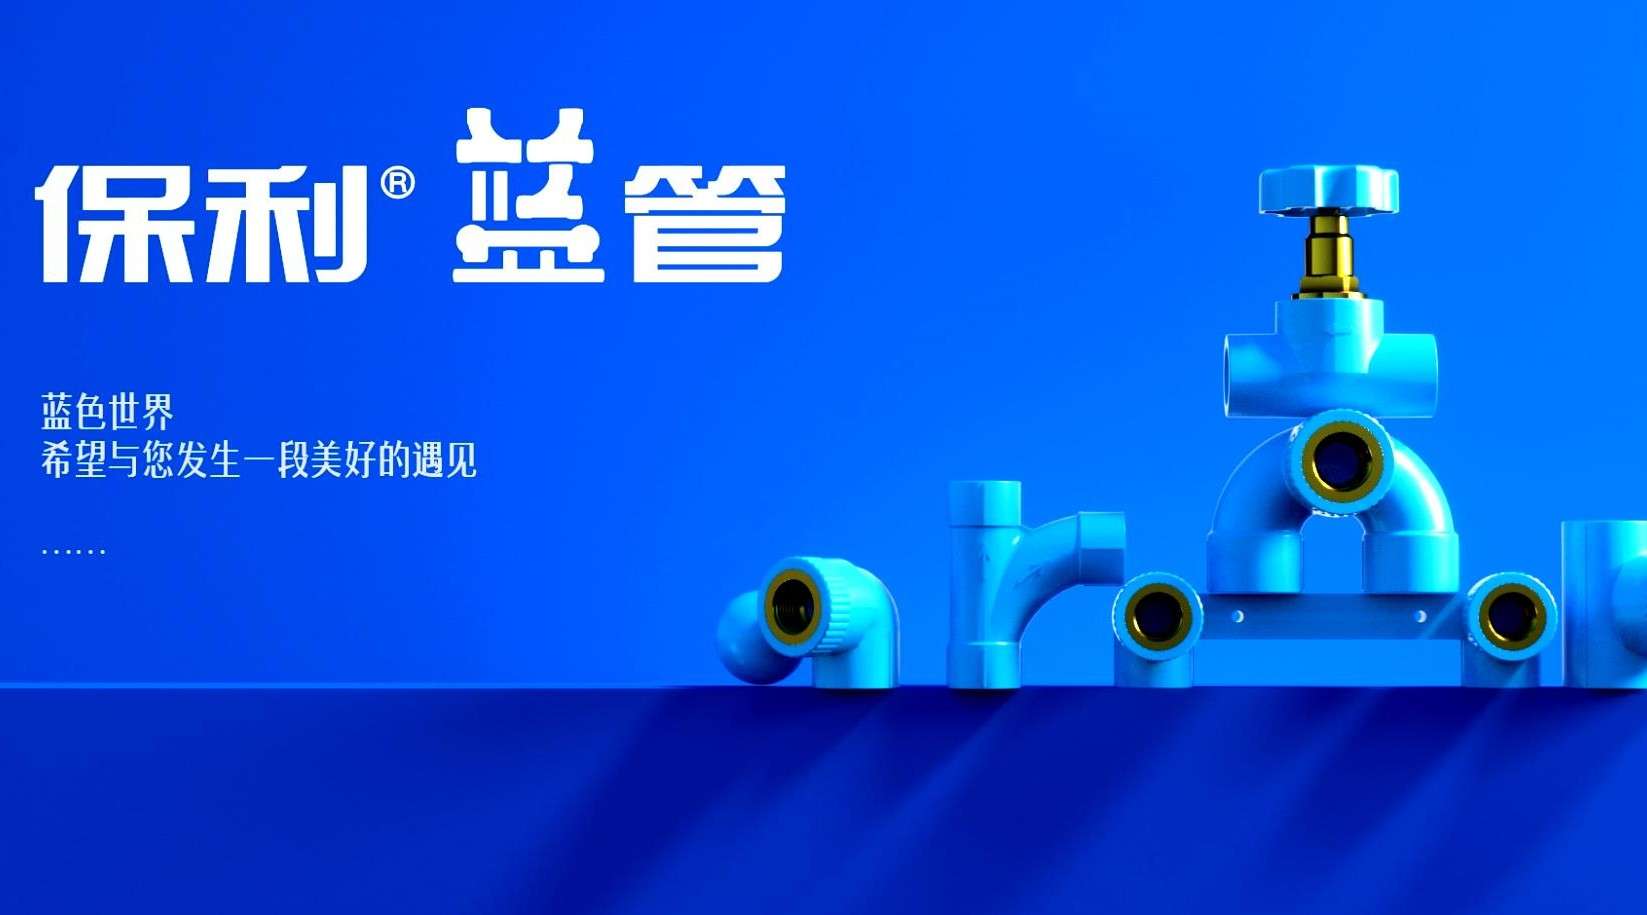 2020 保利蓝管产品创意三维动画《蓝色世界》